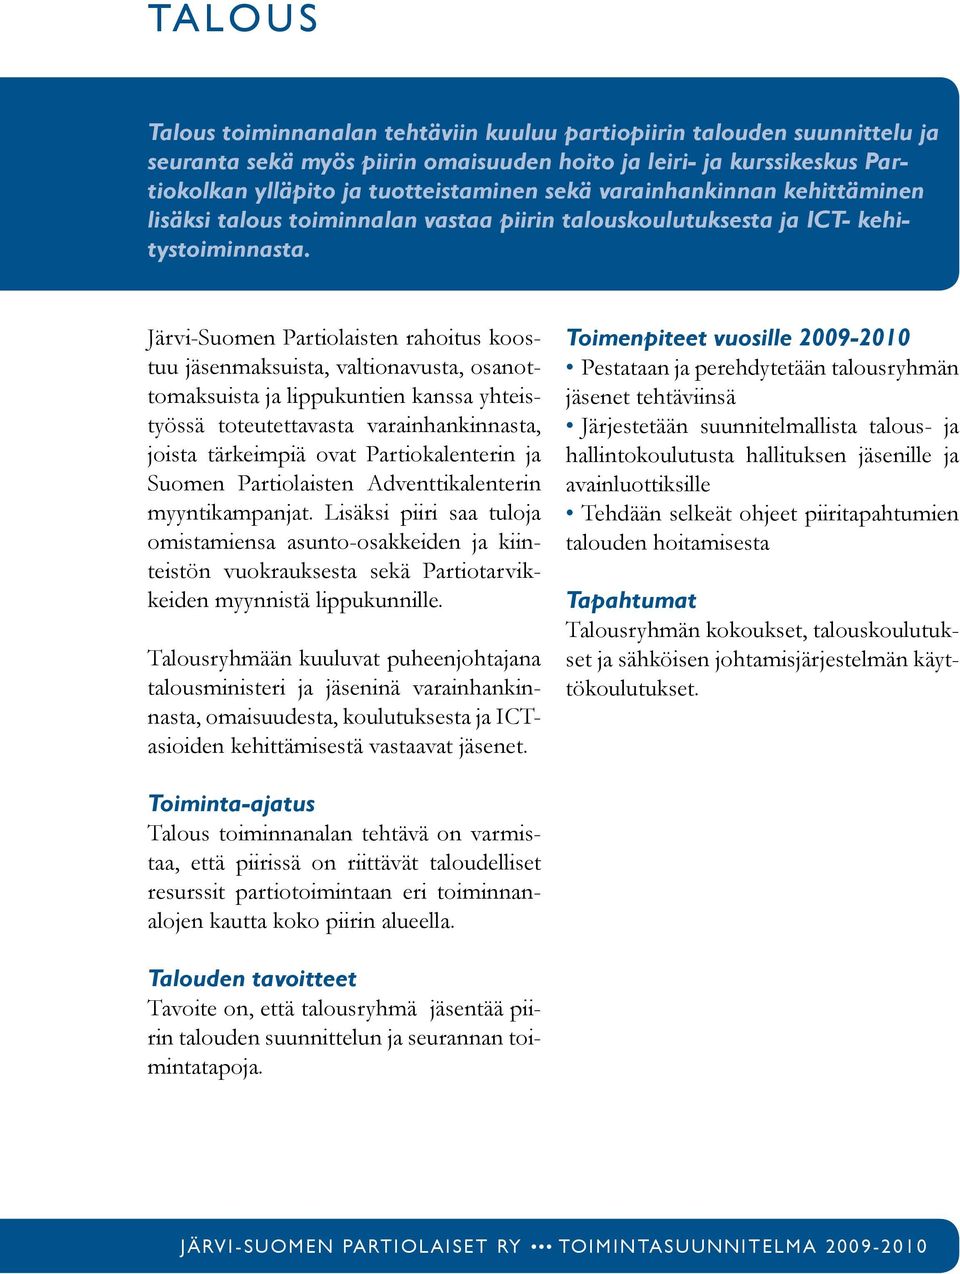 Järvi-Suomen Partiolaisten rahoitus koostuu jäsenmaksuista, valtionavusta, osanottomaksuista ja lippukuntien kanssa yhteistyössä toteutettavasta varainhankinnasta, joista tärkeimpiä ovat